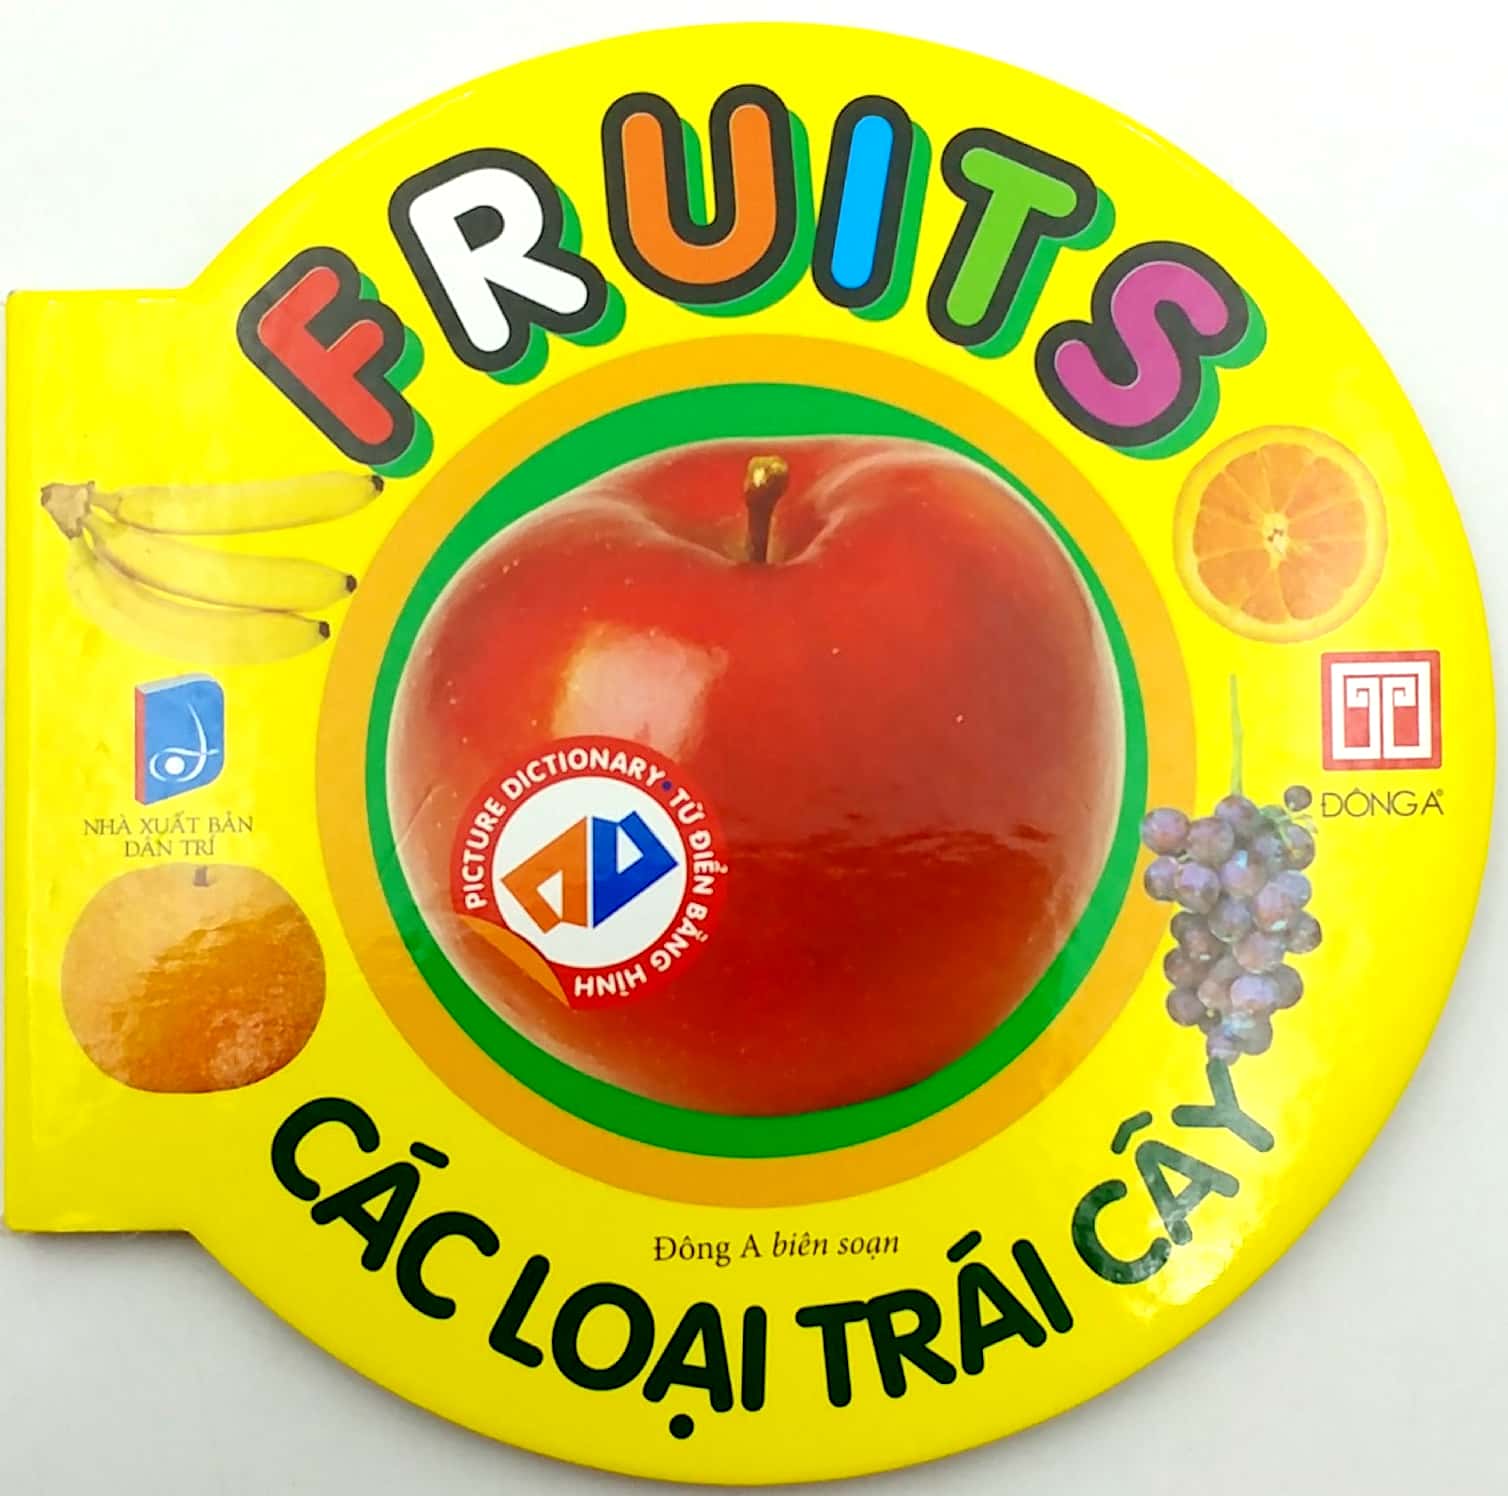 Từ Điển Anh - Việt Bằng Hình: Fruit - Các Loại Trái Cây PDF